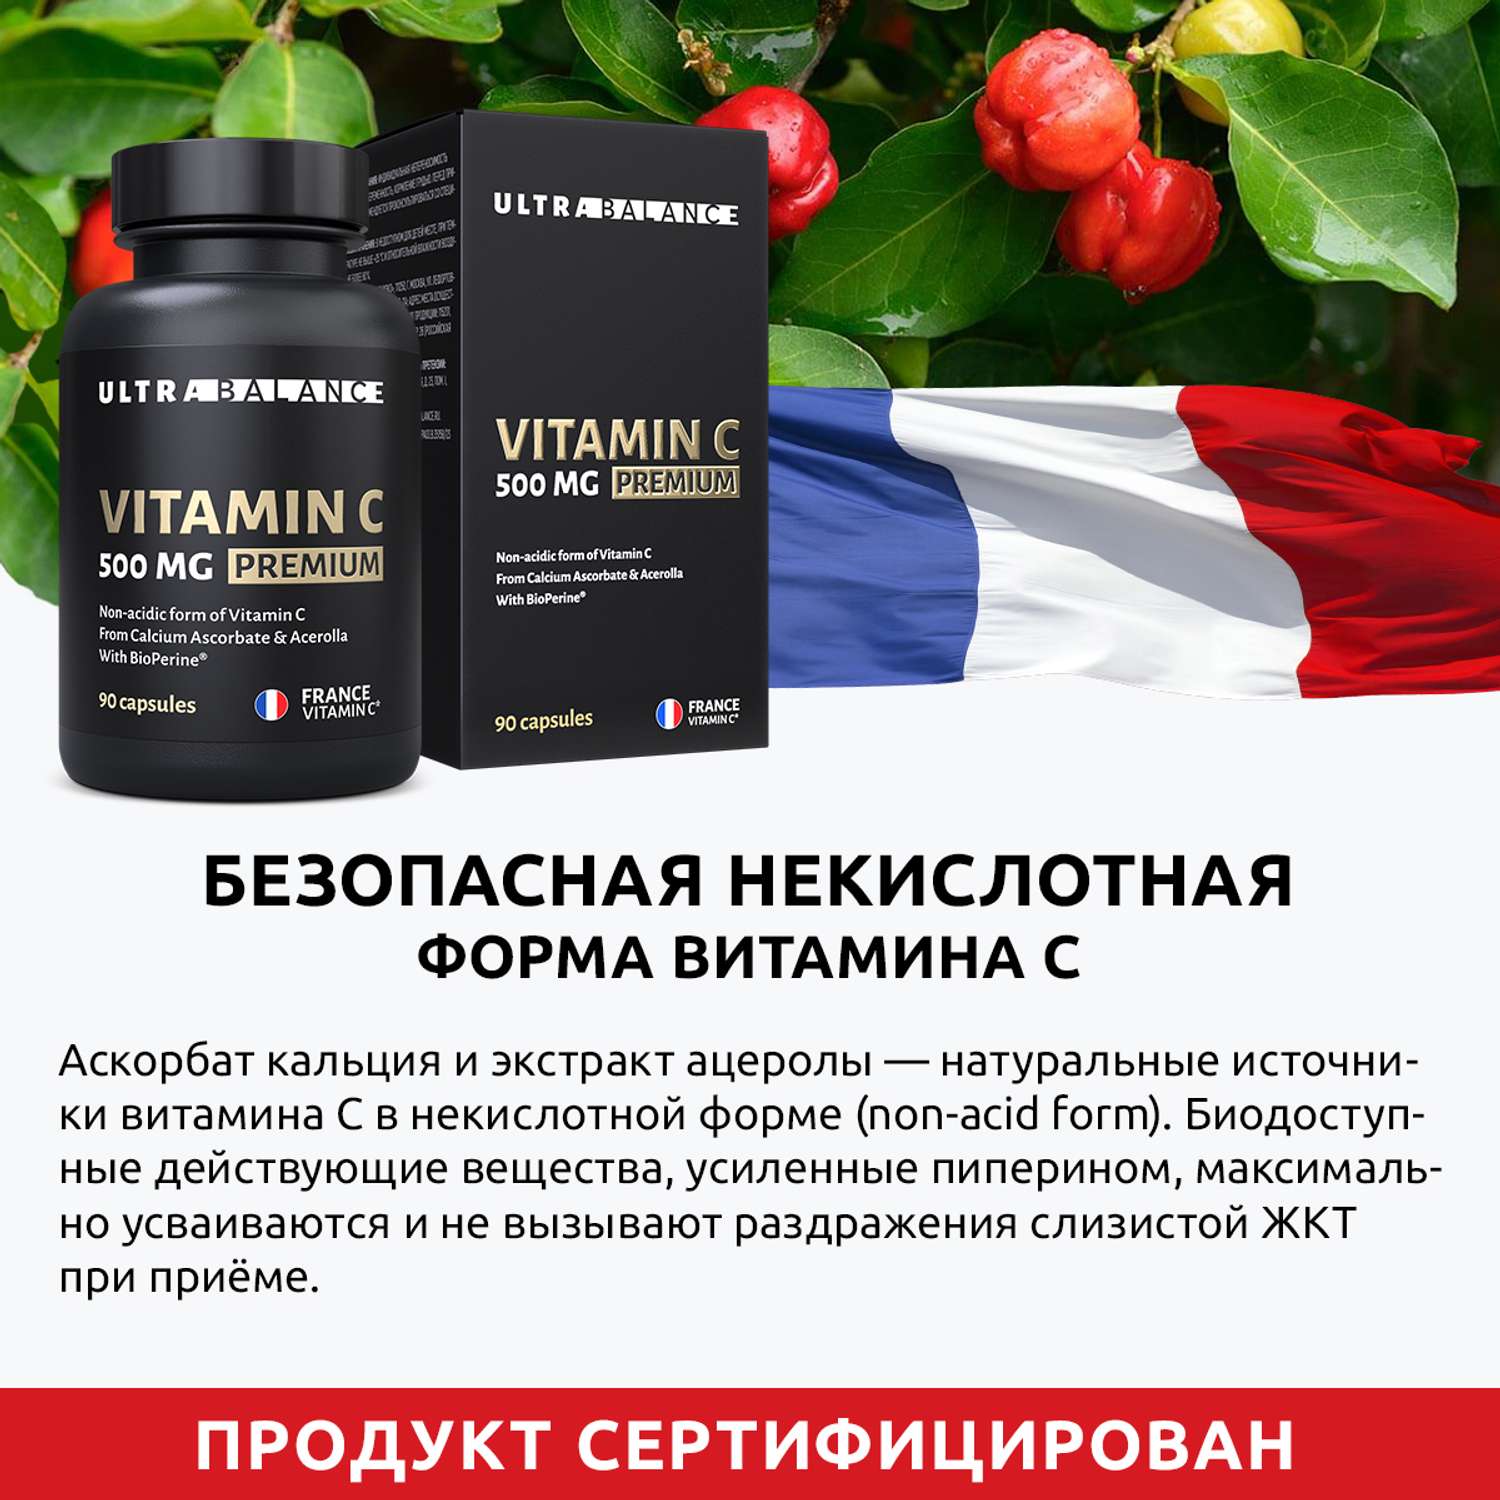 Витамин C 180 капсул UltraBalance 500 Mg Premium - фото 4